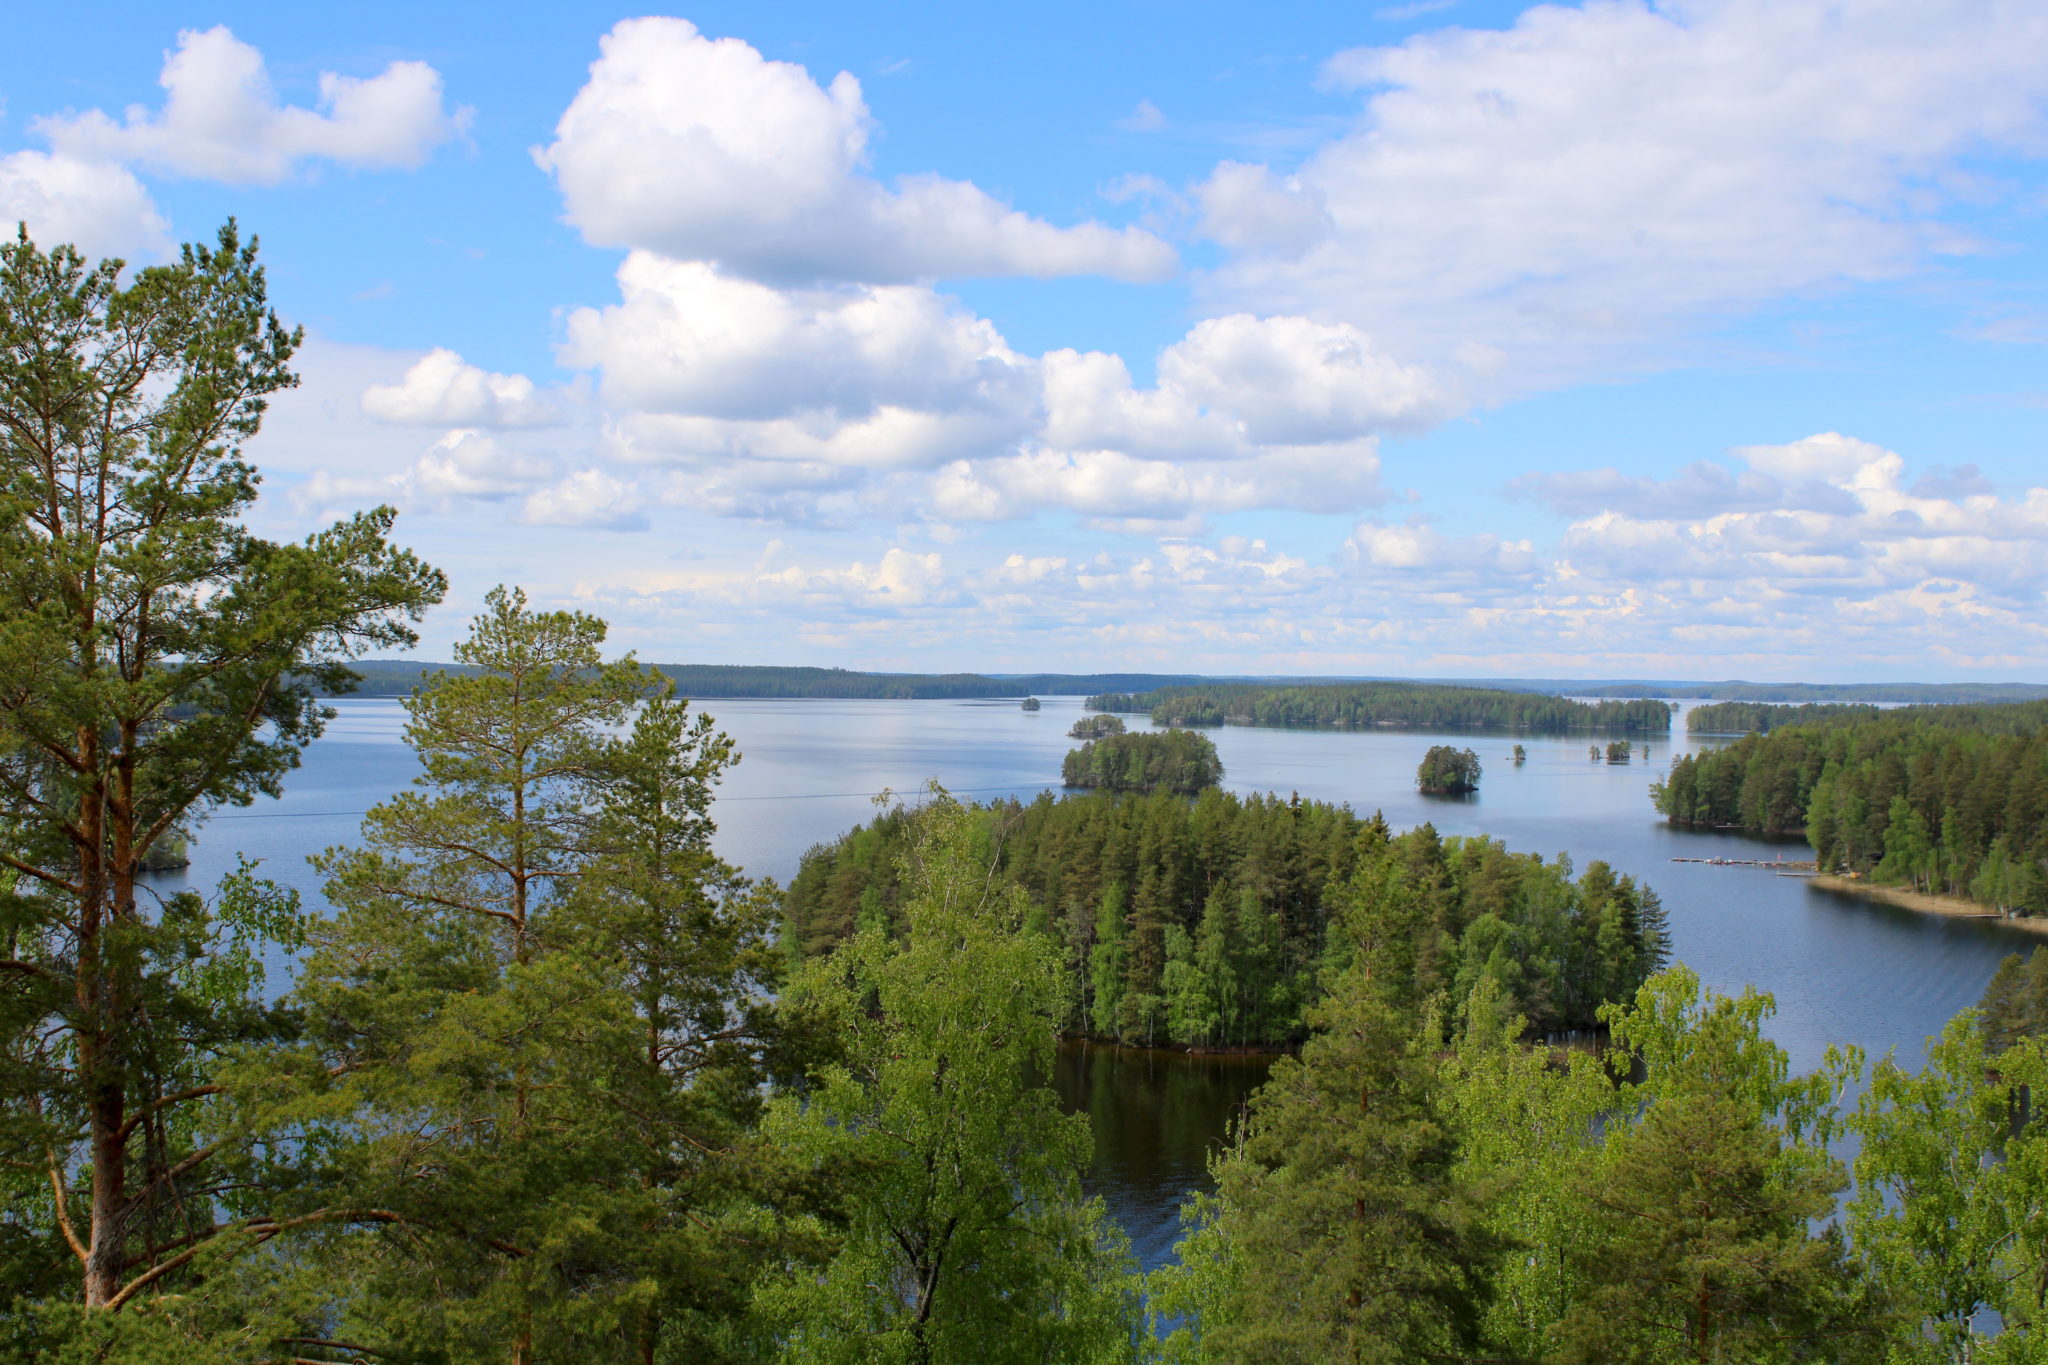 Urlaub am Saimaa See, Lappeenranta und Imatra region